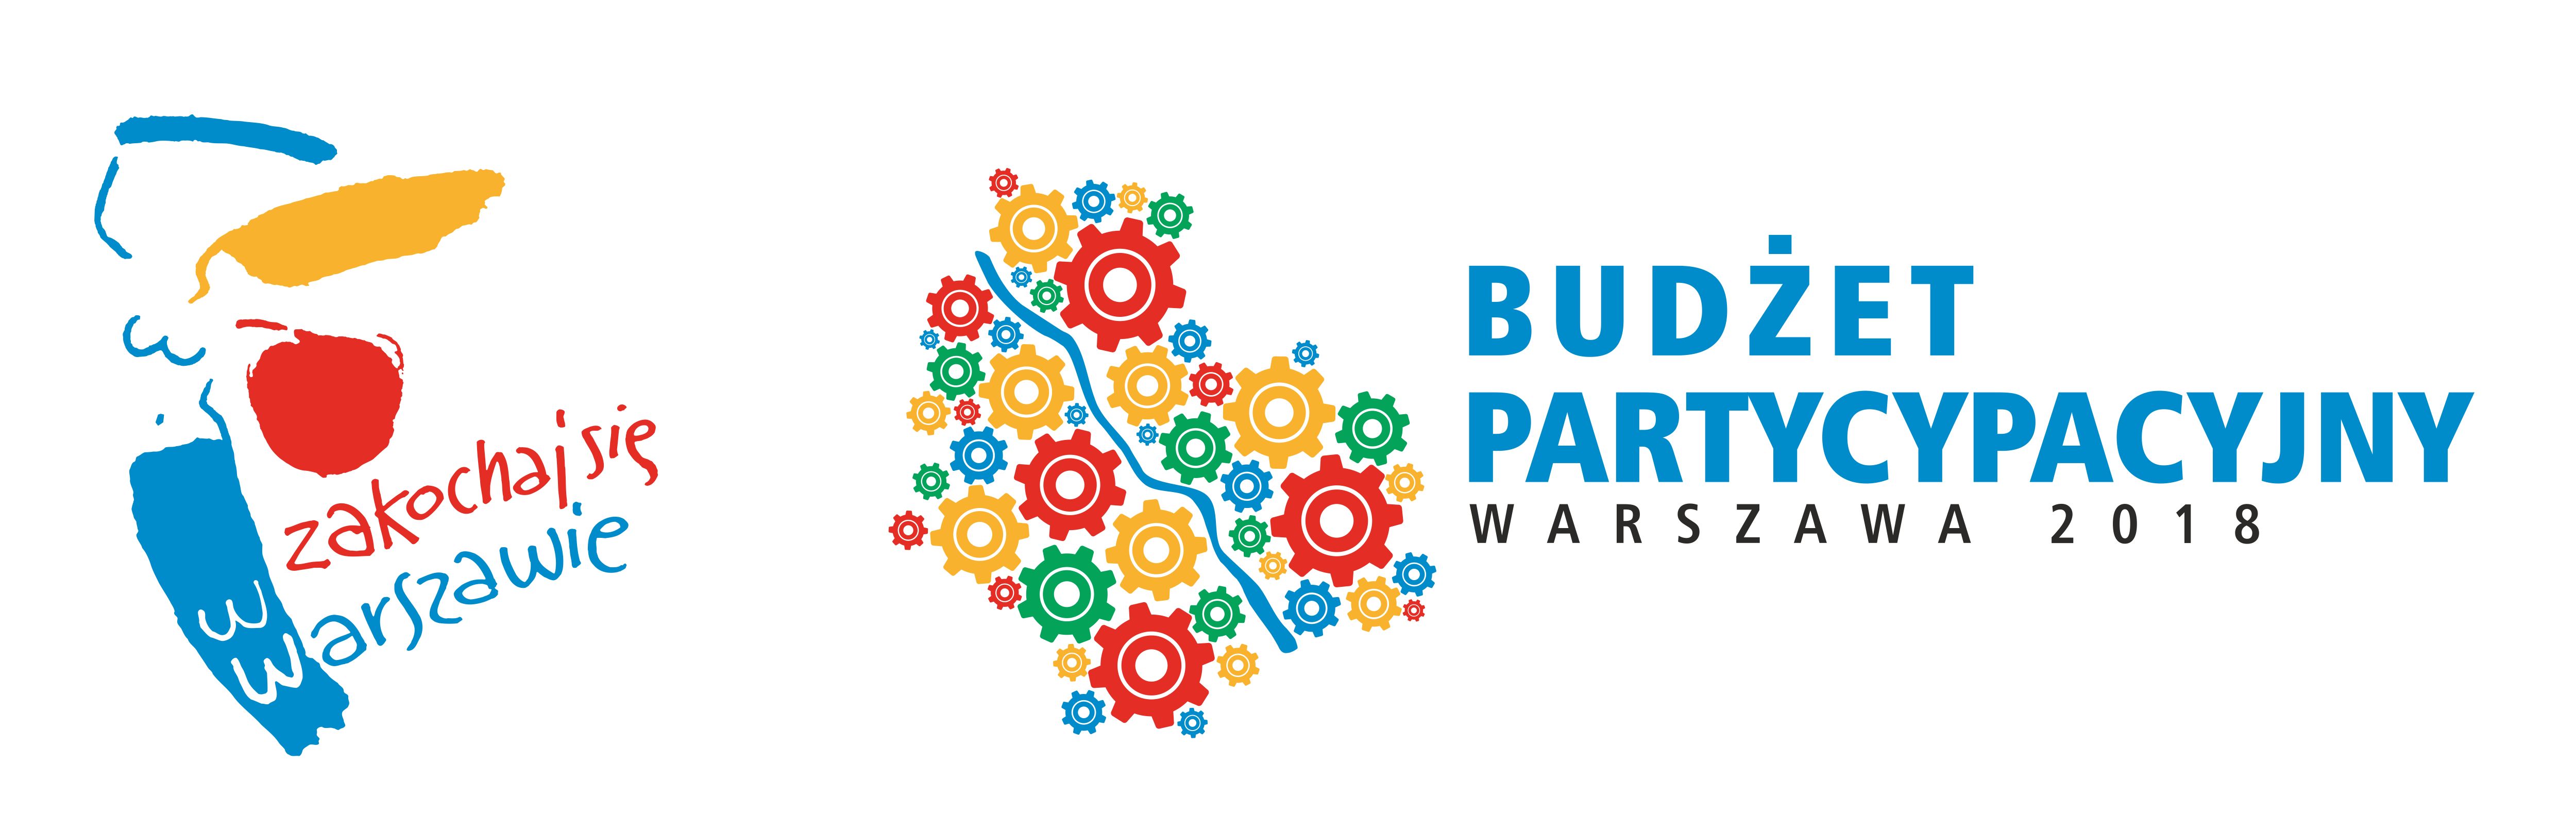 20170523 logo budzetpartycypacyjny